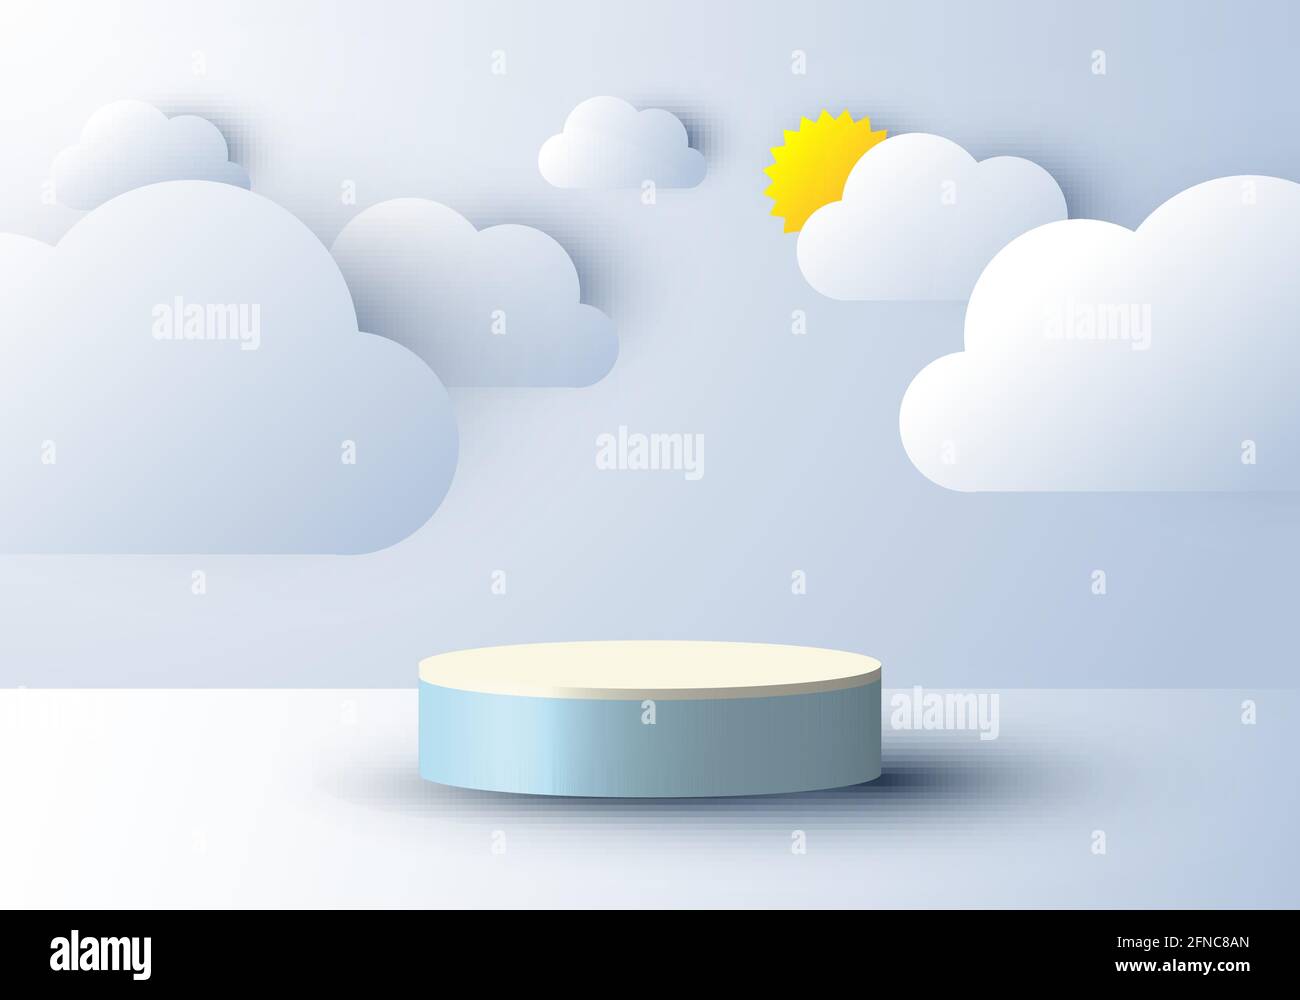 3D réaliste résumé scène minimale vide podium affichage avec le style de coupe de nuages et de papier solaire sur fond bleu ciel. Conception pour la présentation du produit, m Illustration de Vecteur